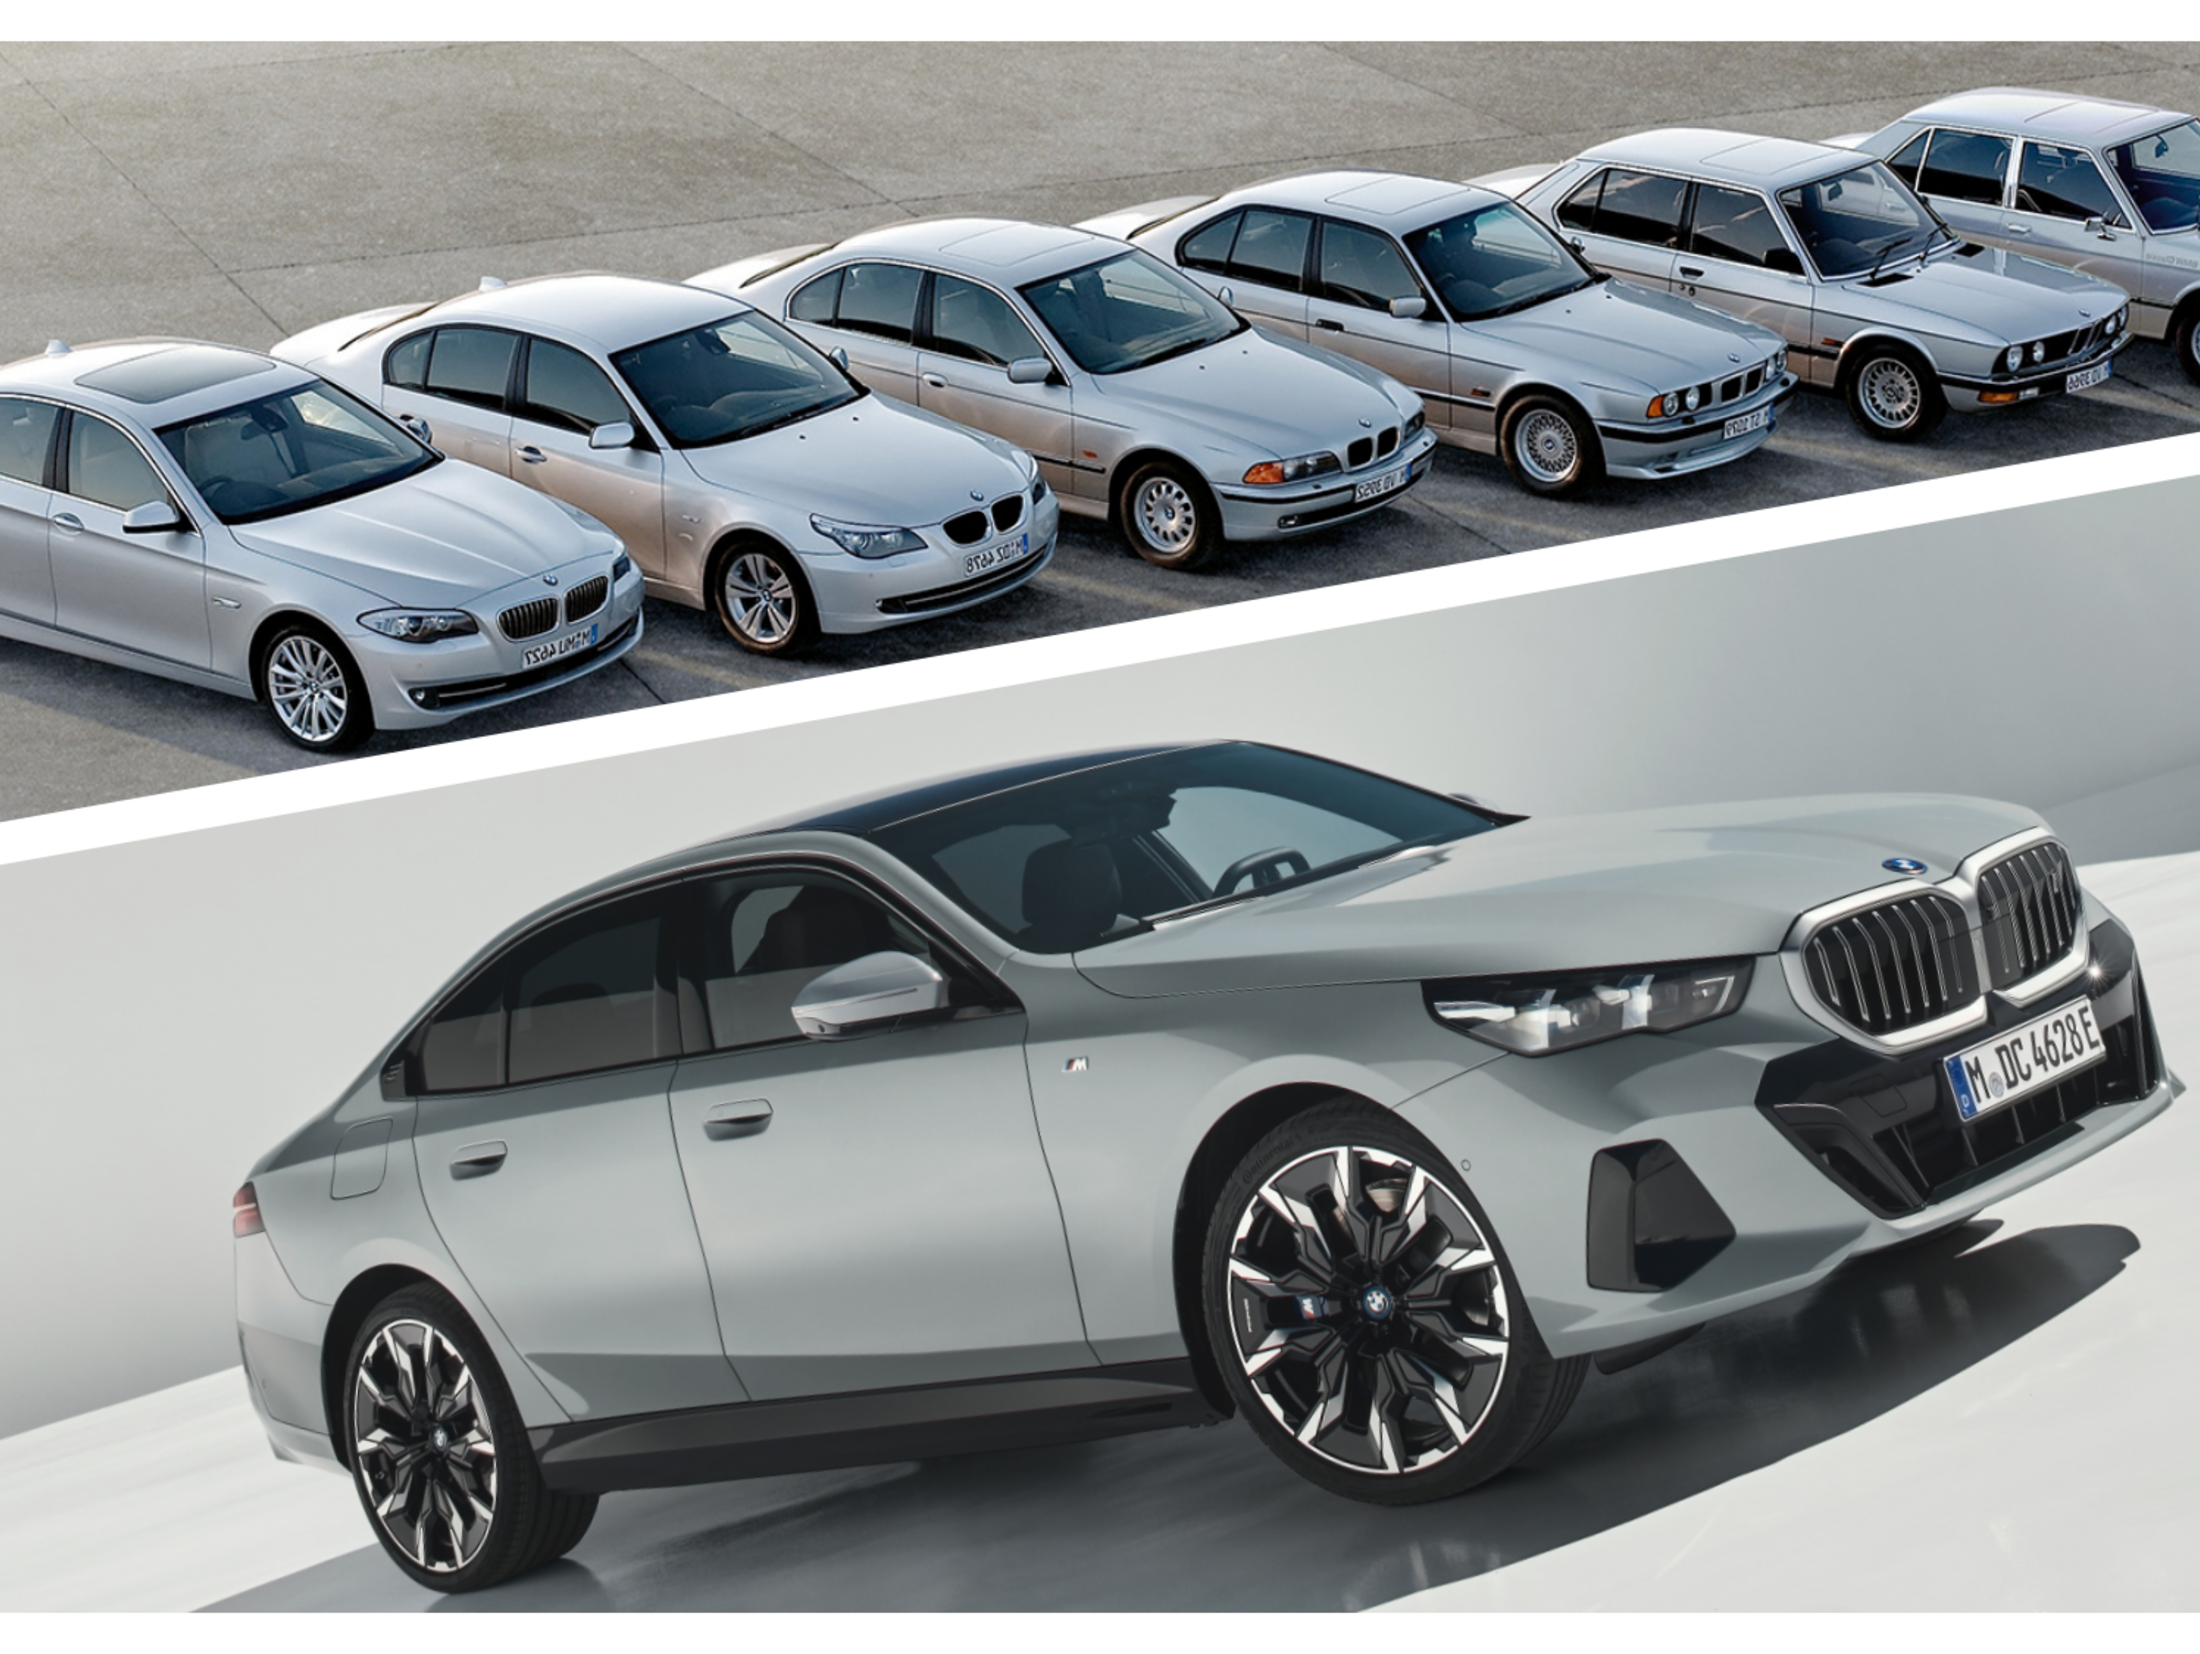 Neue Fahrzeuge BMW Die neue 5er Limousine benziner 520i A - Krah & Enders  BMW